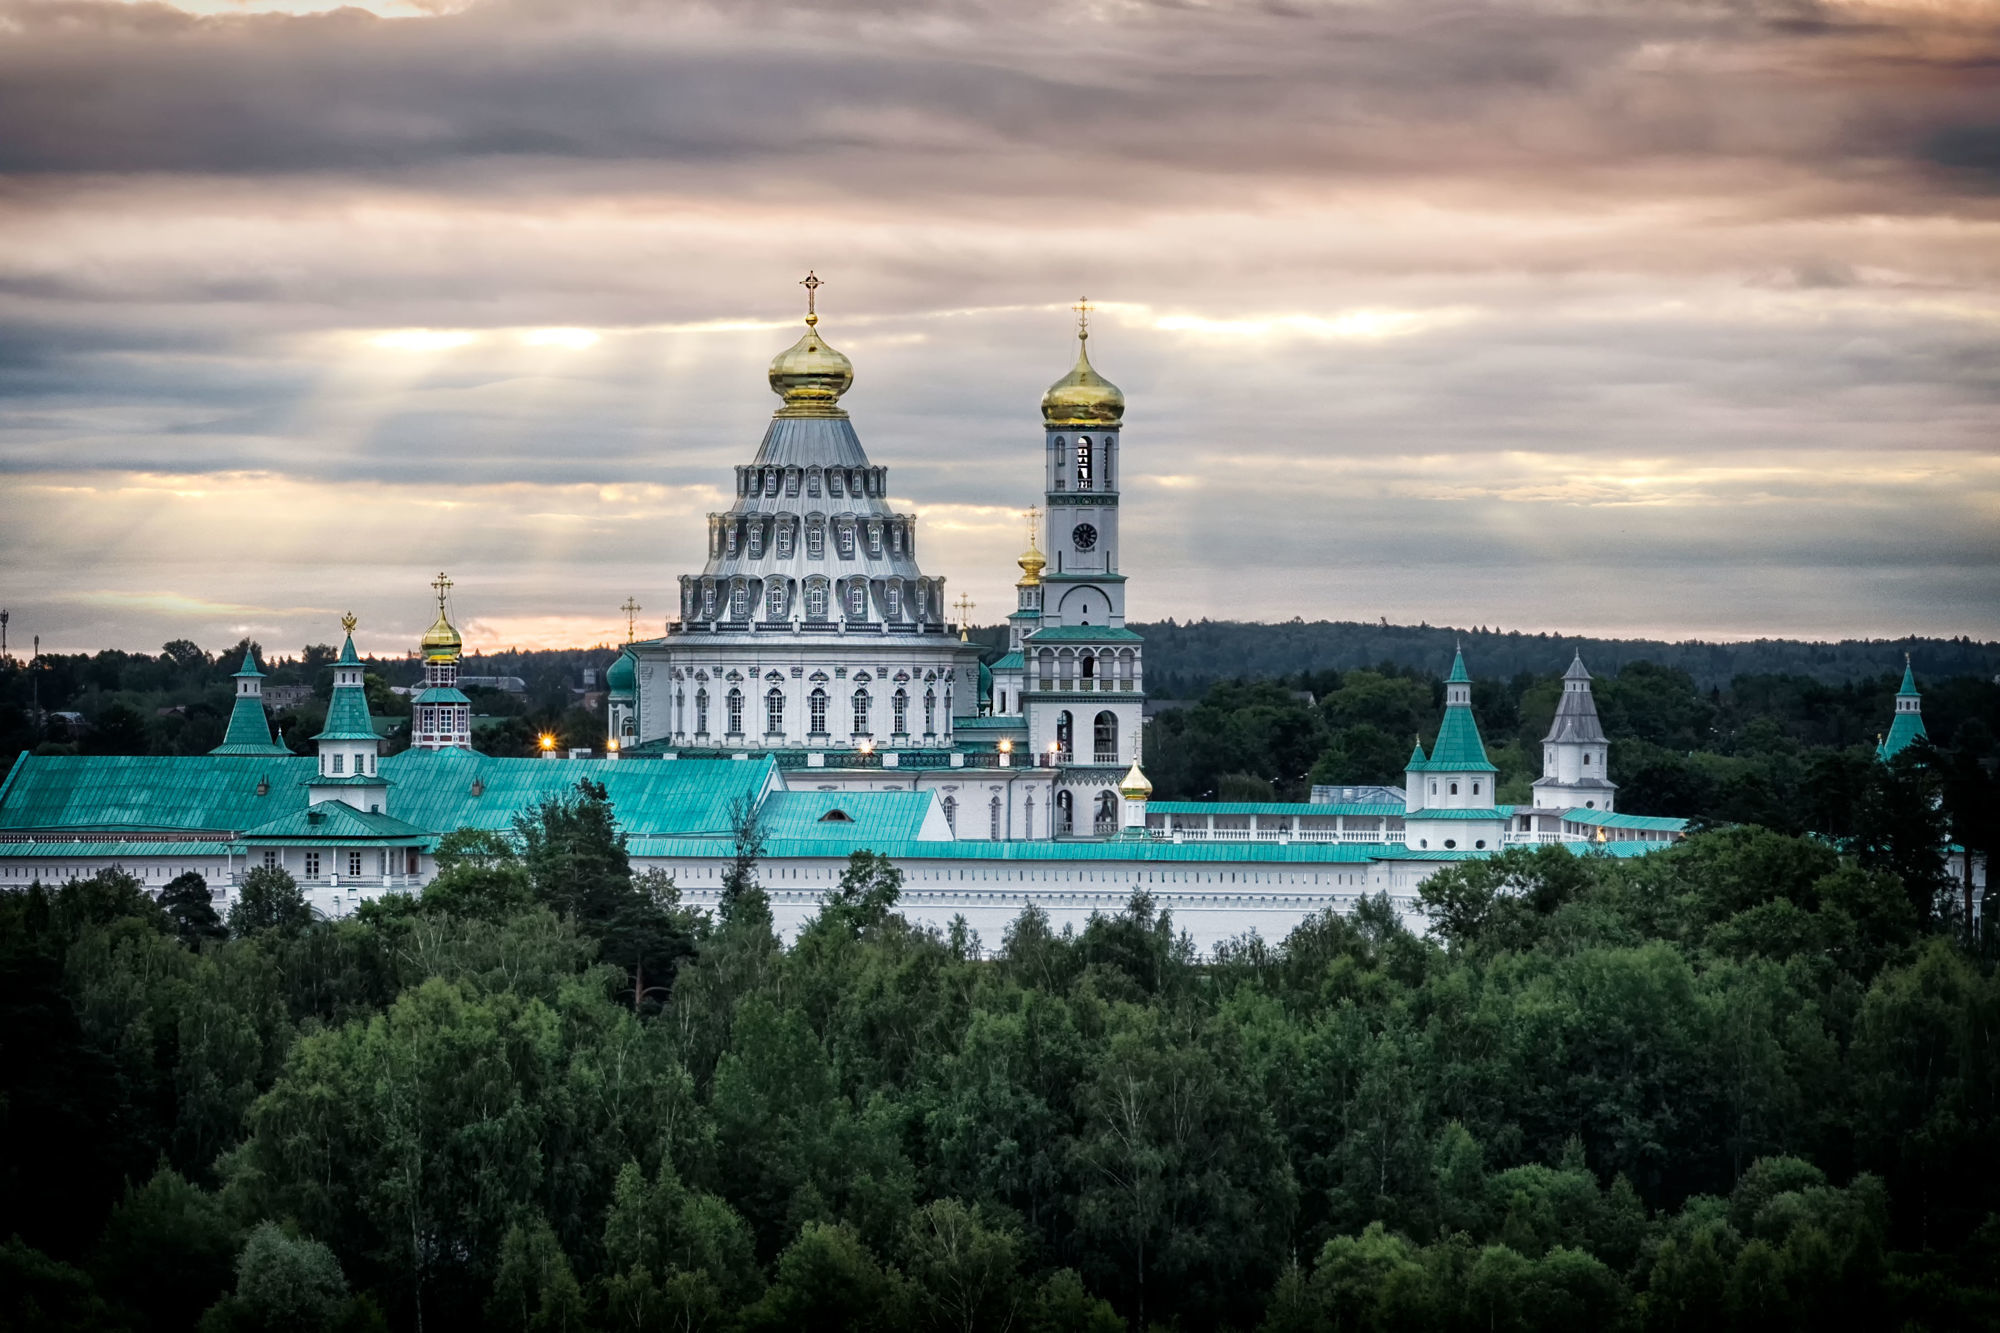 Воскресенский собор Новоиерусалимского монастыря